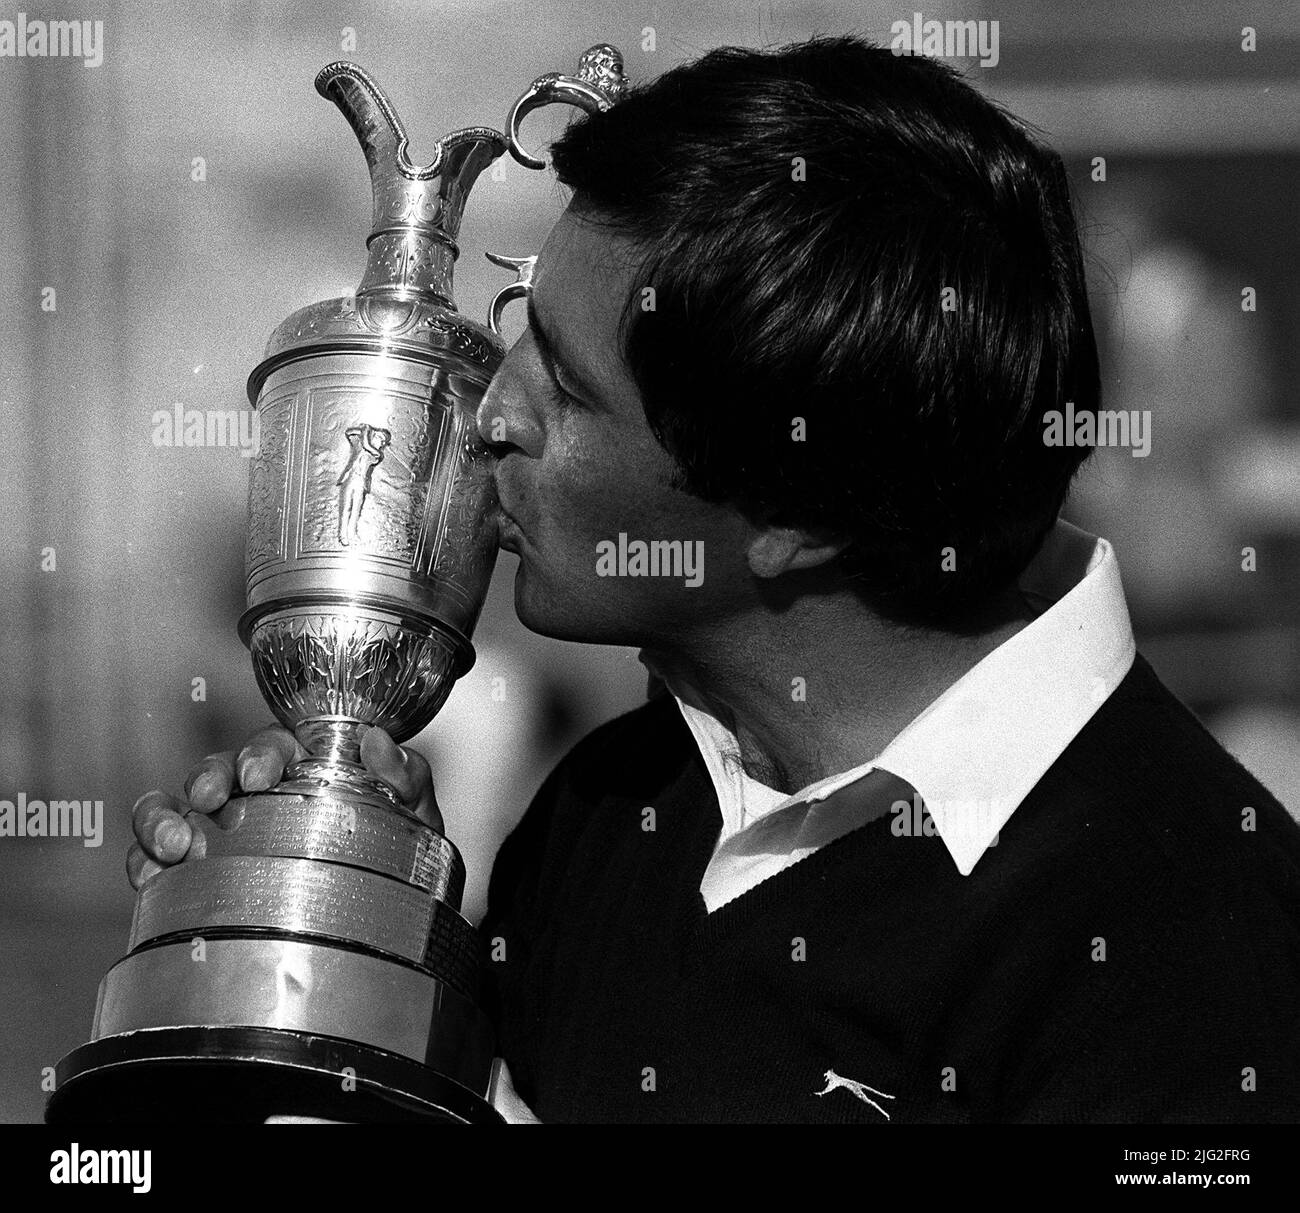 Foto di archivio datata 22-07-1984 della Spagna Seve Ballesteros bacia il suo trofeo Open Golf Championship a St Andrew's, Fife, dopo che un putt di birdie lo ha aiutato a finire il 276, 12 sotto par. Data di pubblicazione: Giovedì 7 luglio 2022. Foto Stock